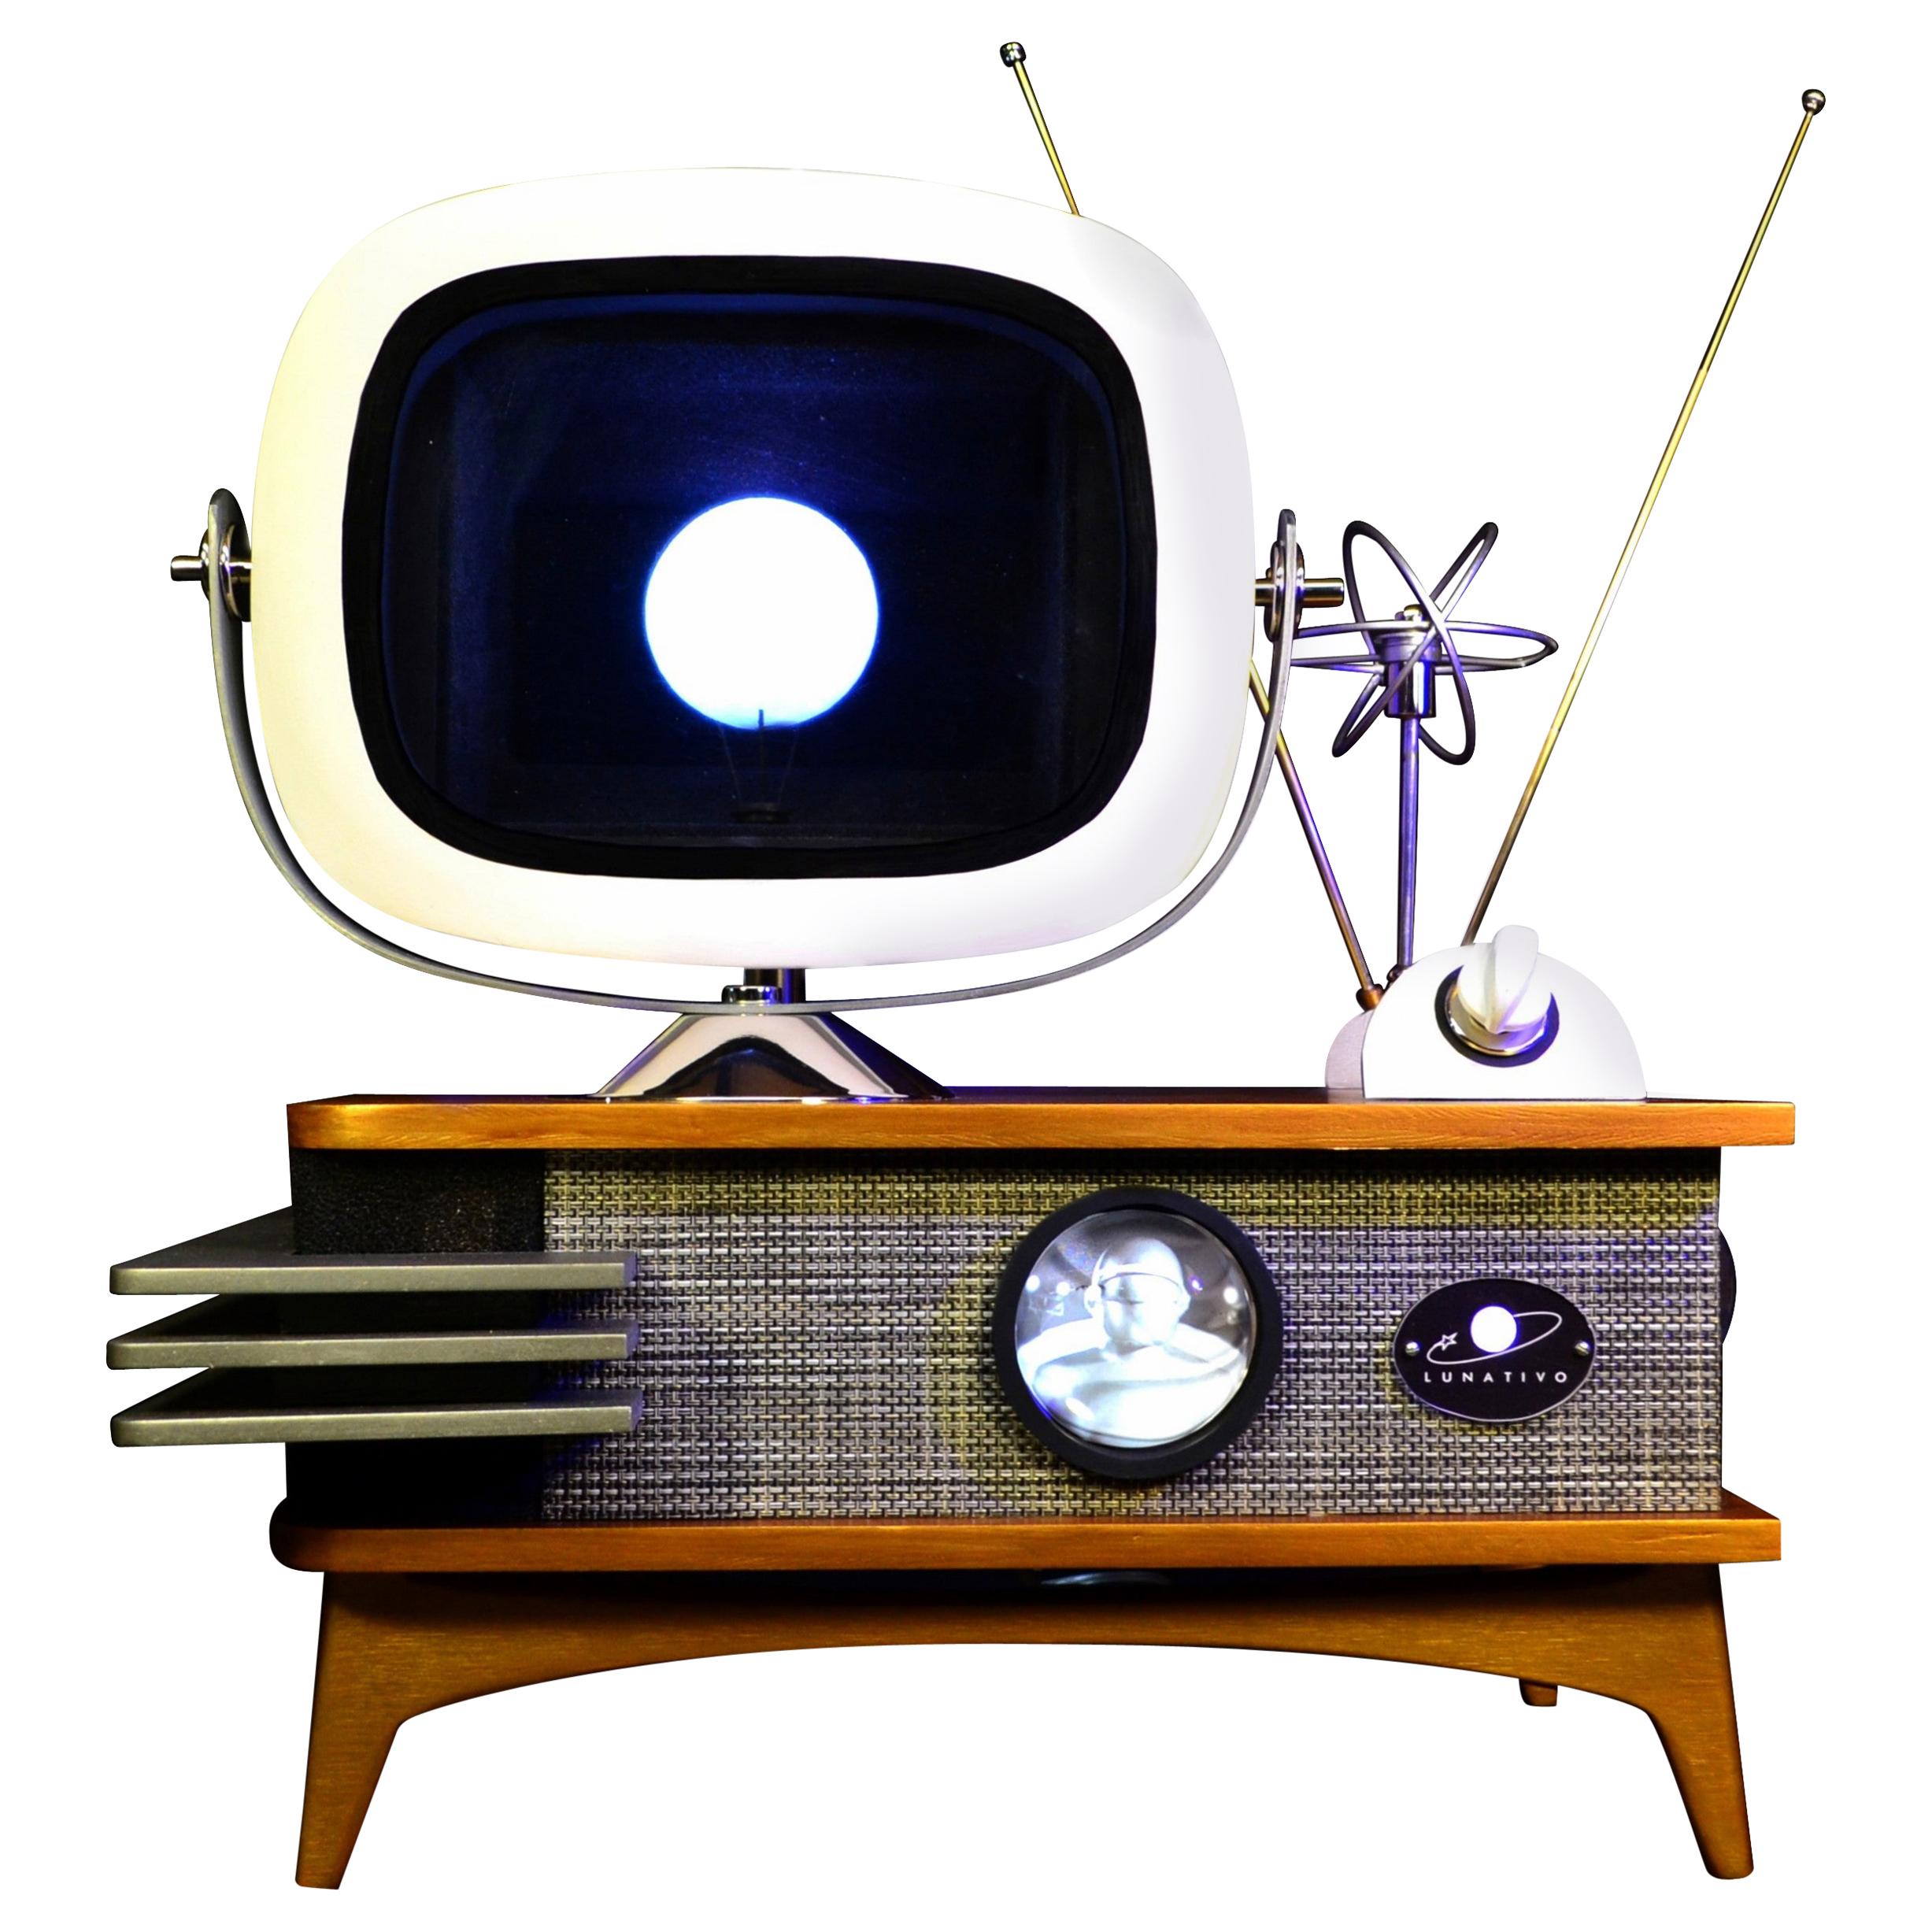 Art Donovan / Kinetic, Illuminated, Moon Tv Sculpture, Midcentury/Atomic Age For Sale